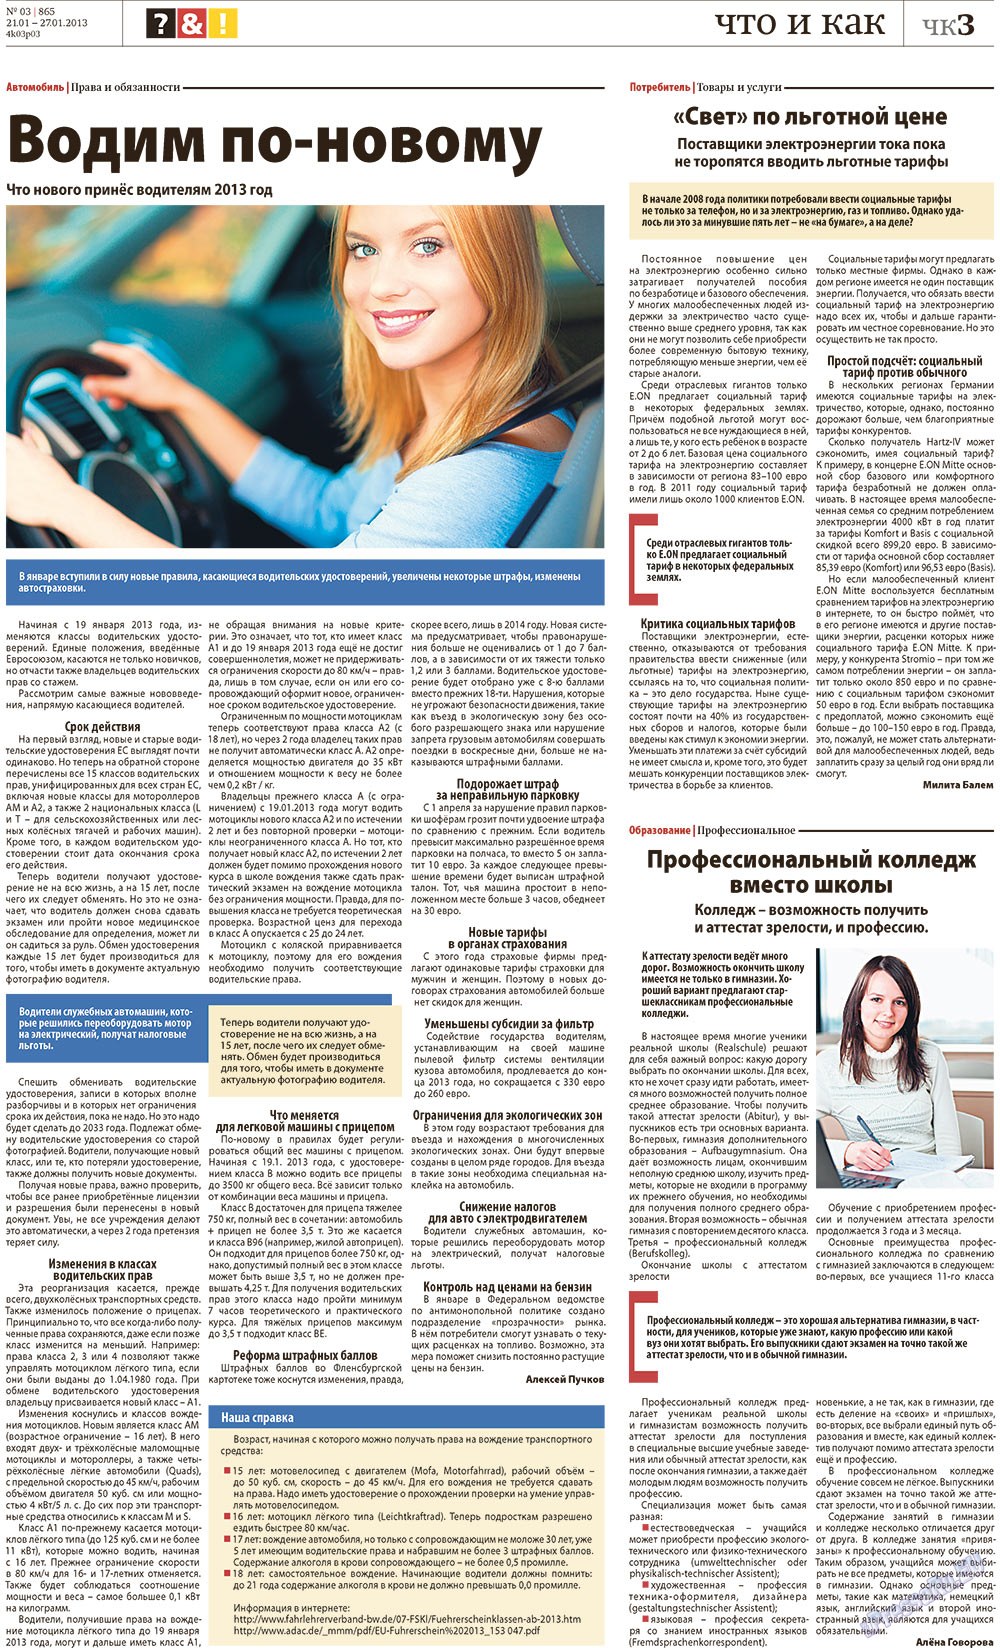 Редакция Германия, газета. 2013 №3 стр.23